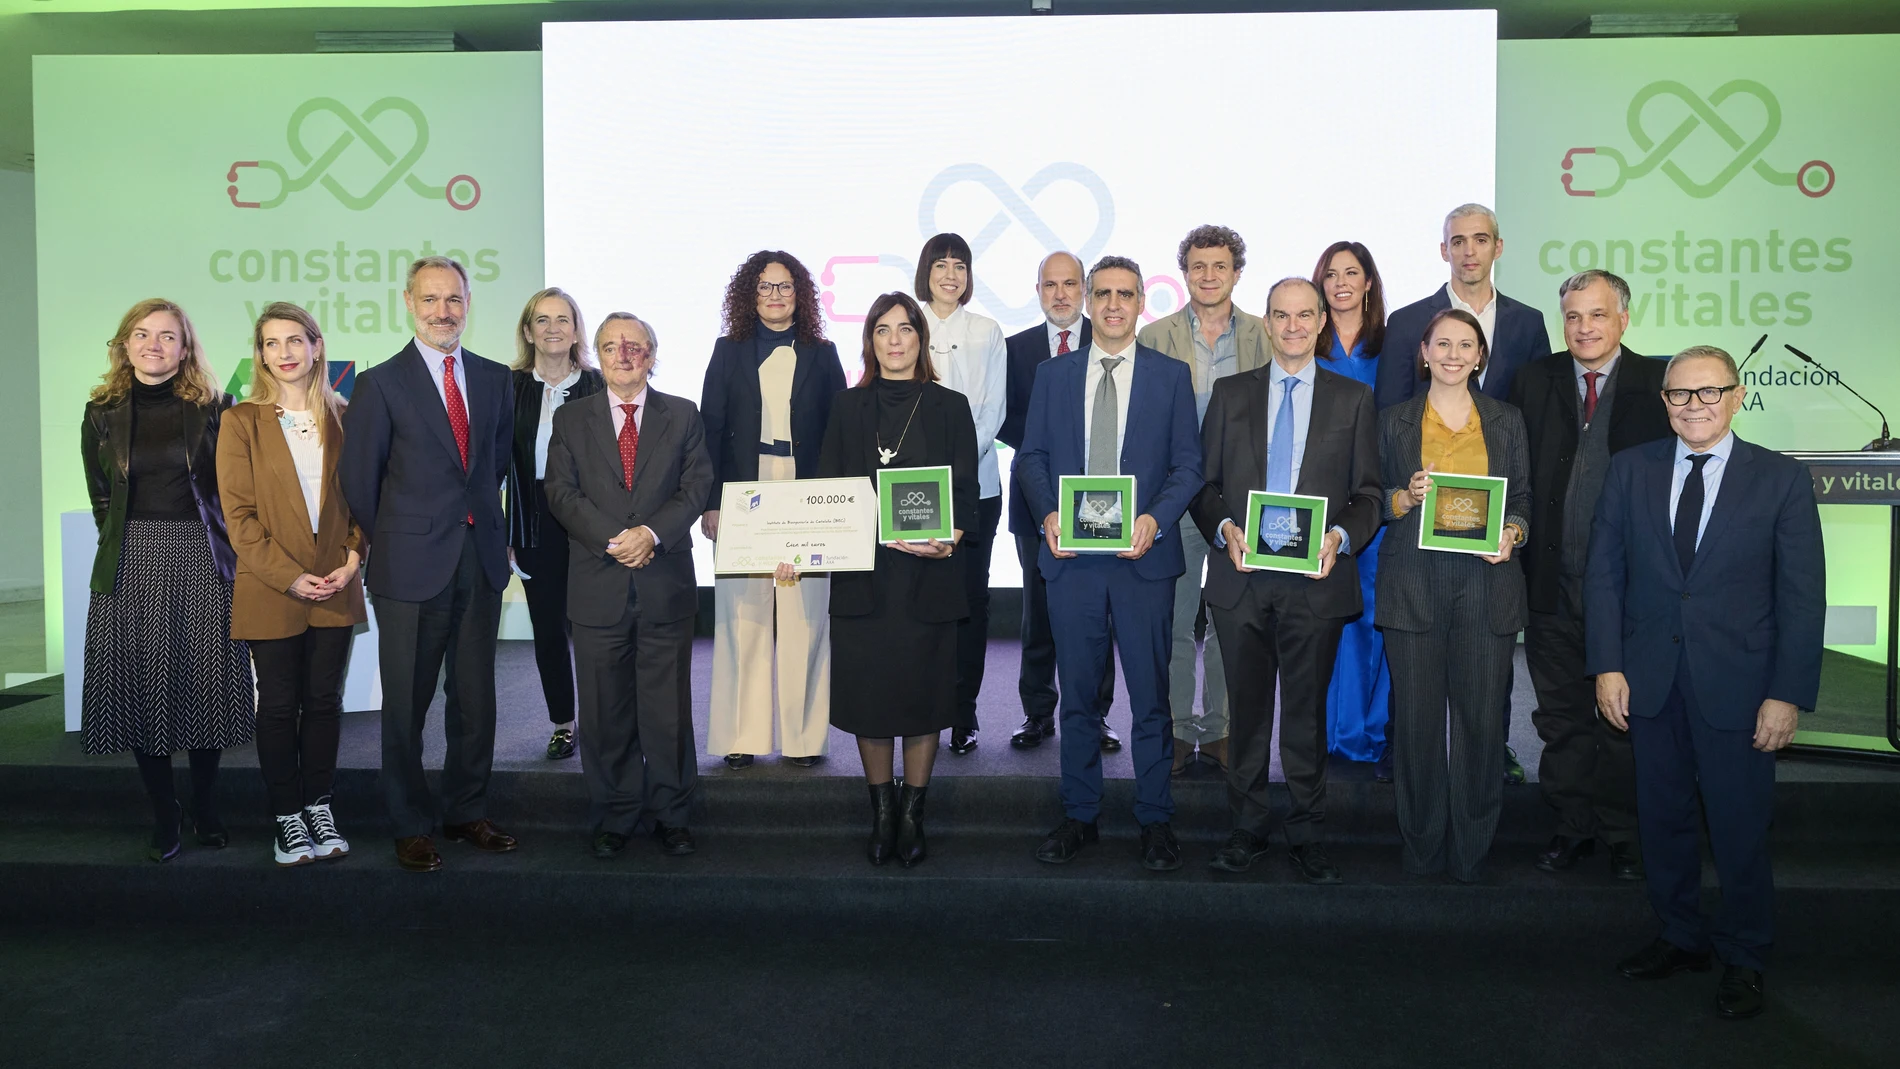 Foto de familia de los premiados y el jurado junto a la Diana Morant, ministra de Ciencia e Innovación, en el centro de la imagen